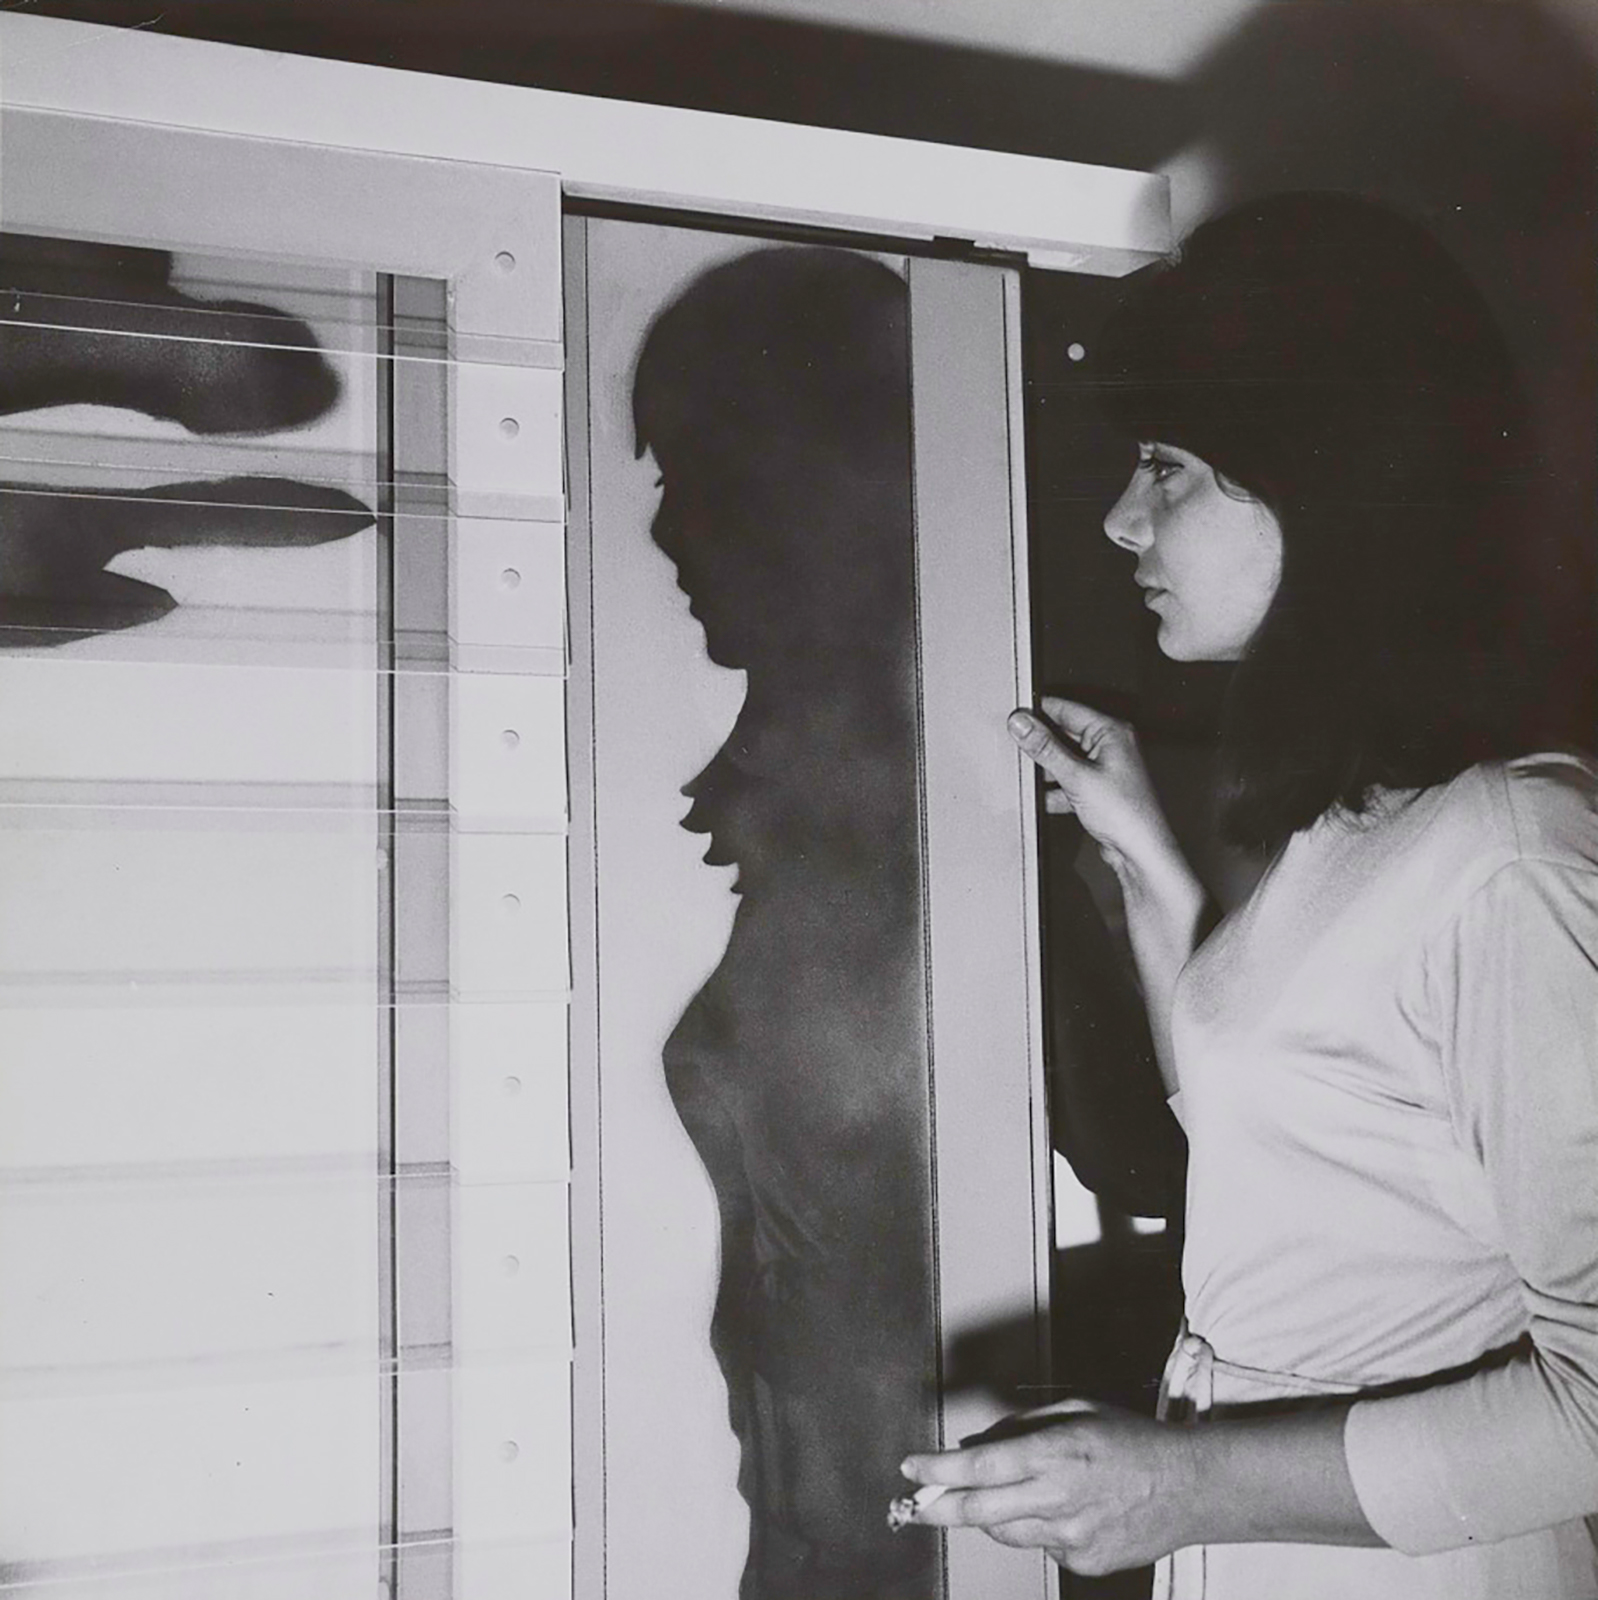 Laura Grisi und ihre Arbeit "West Window", 1966, während der Ausstellung Italy "New Tendencies", Galeria Bonino, 1966 Courtesy Estate Laura Grisi und P420, Bologna